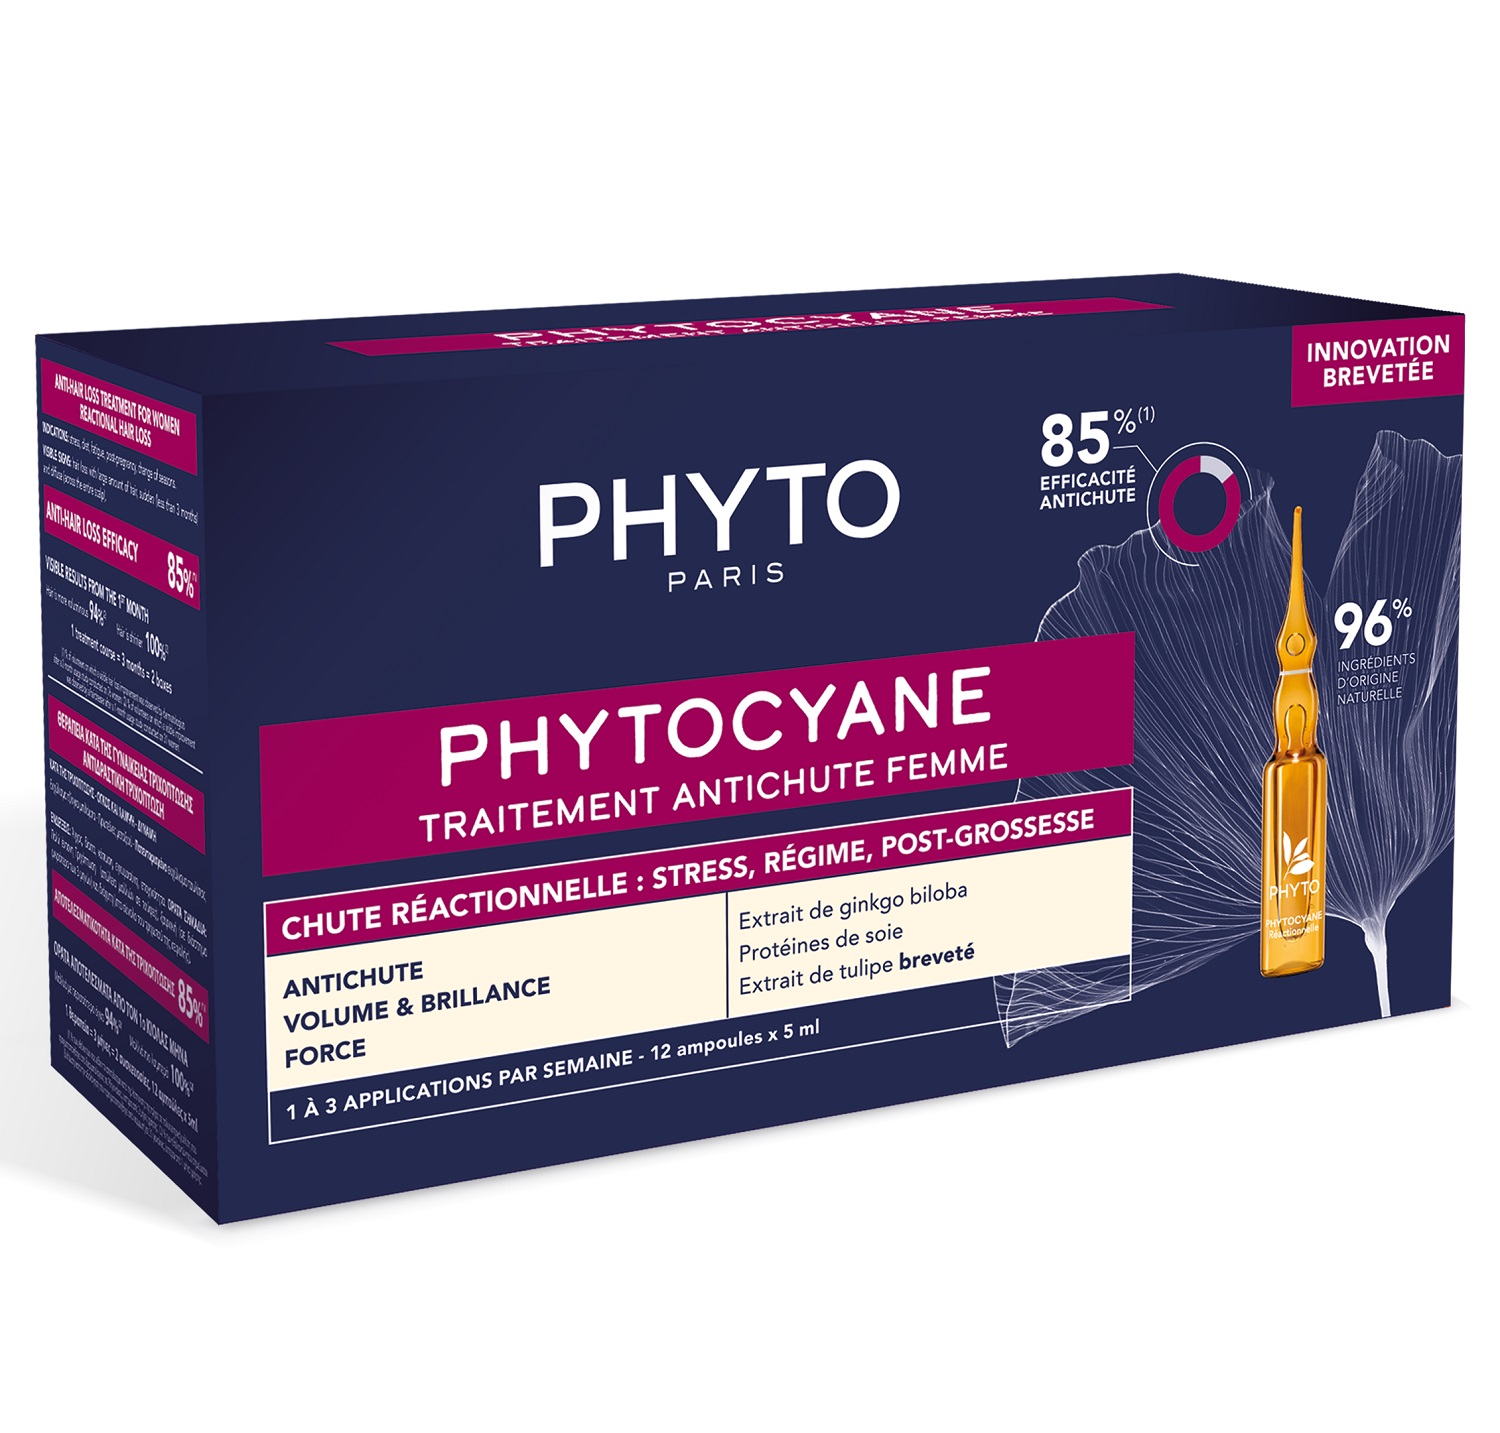 Phyto Сыворотка против выпадения волос для женщин, 12 ампул х 5 мл (Phyto, Phytocyane)